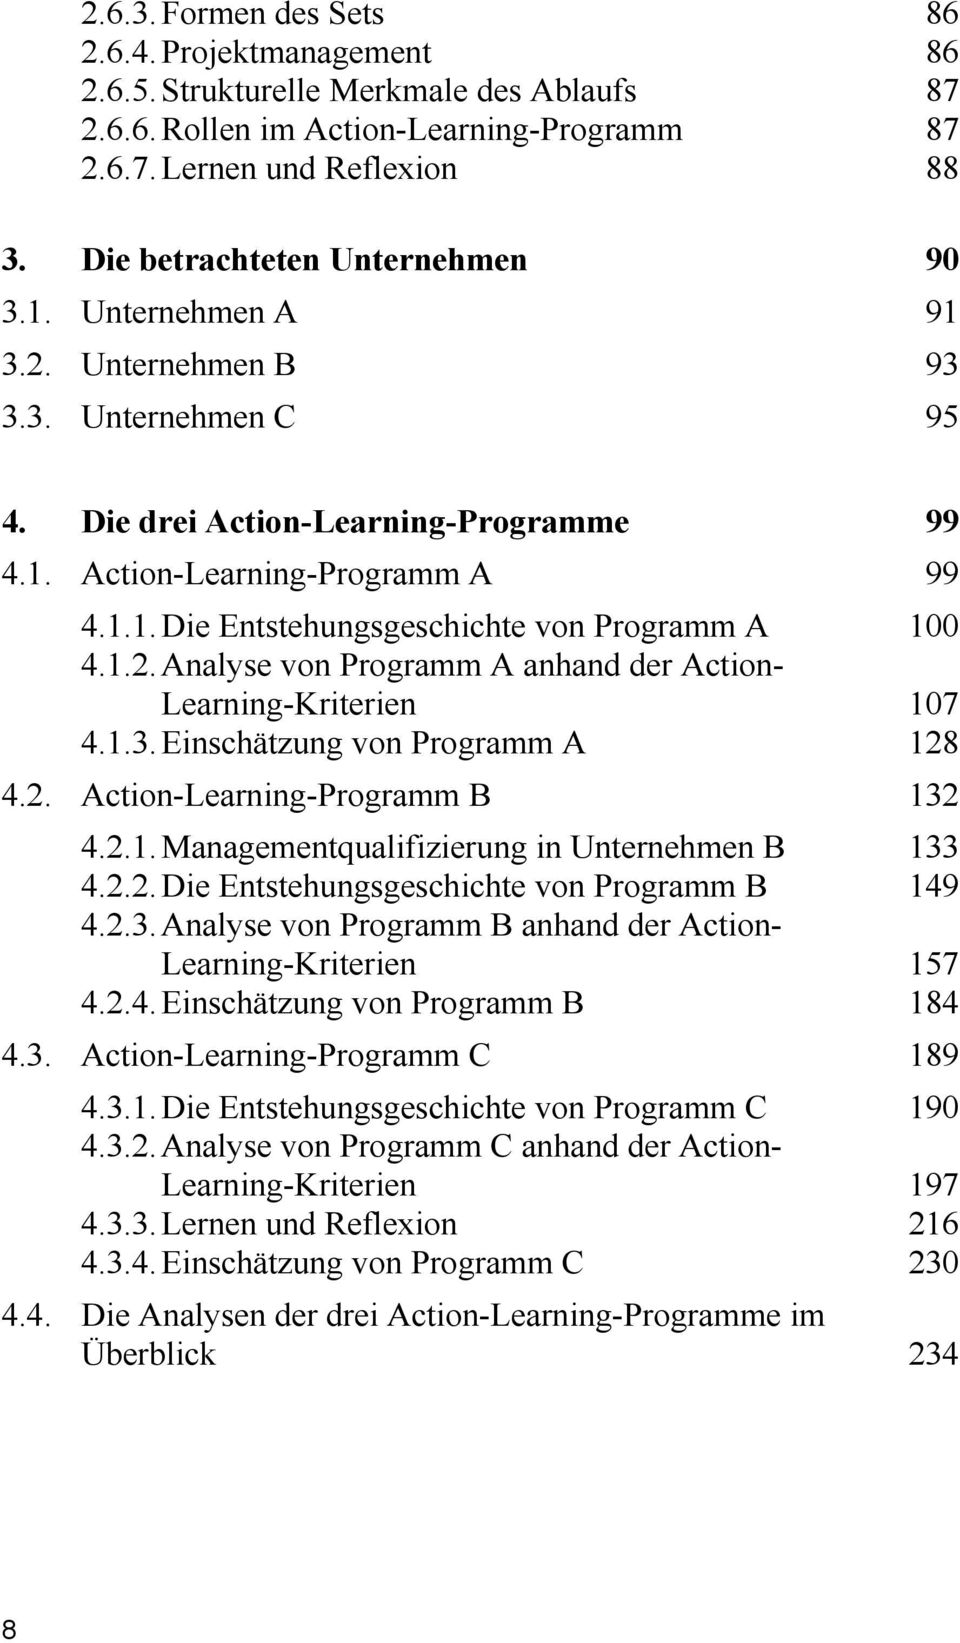 1.2. Analyse von Programm A anhand der Action- Learning-Kriterien 107 4.1.3. Einschätzung von Programm A 128 4.2. Action-Learning-Programm B 132 4.2.1. Managementqualifizierung in Unternehmen B 133 4.